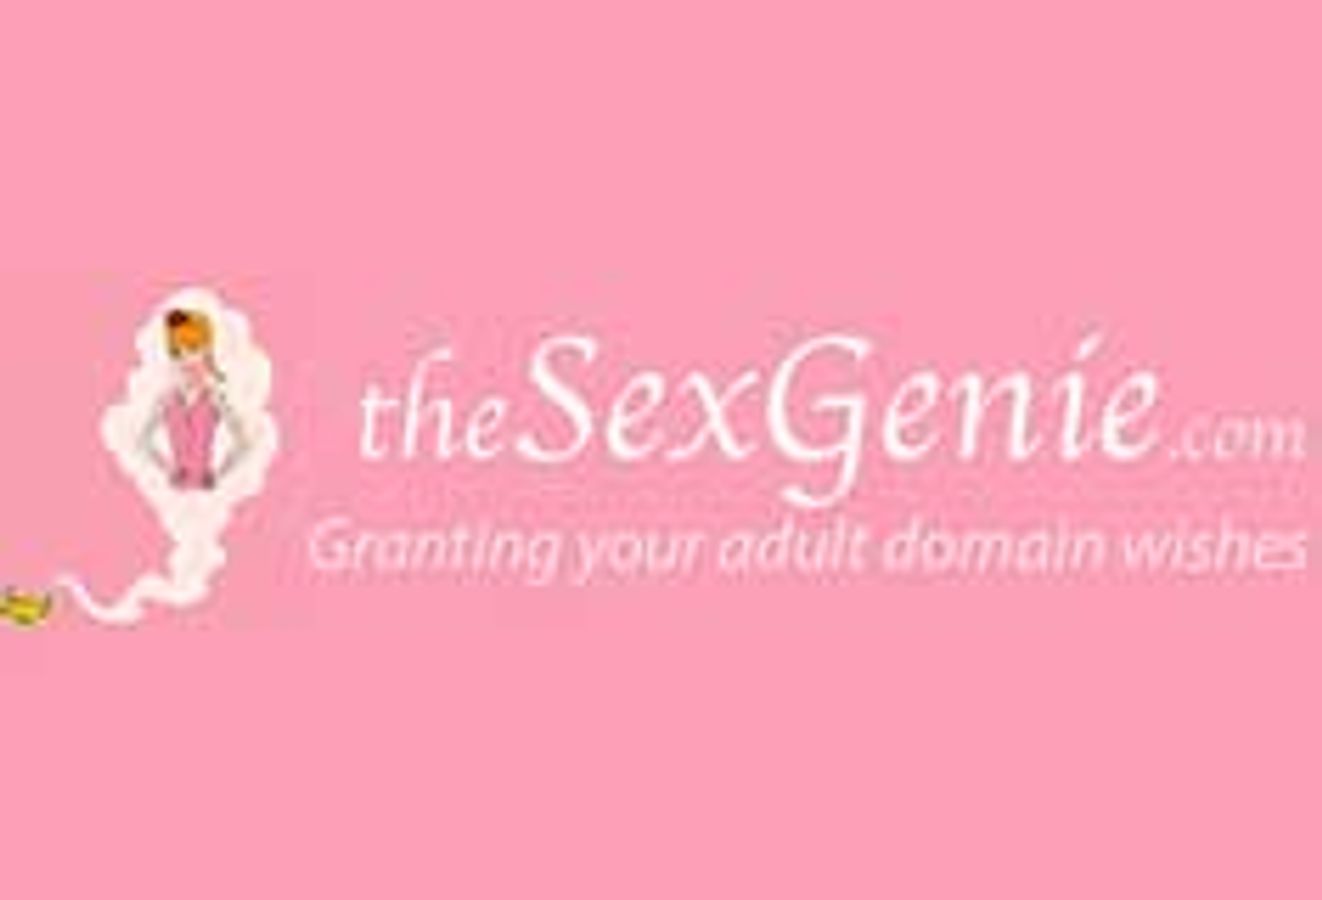 TheSexGenie.com